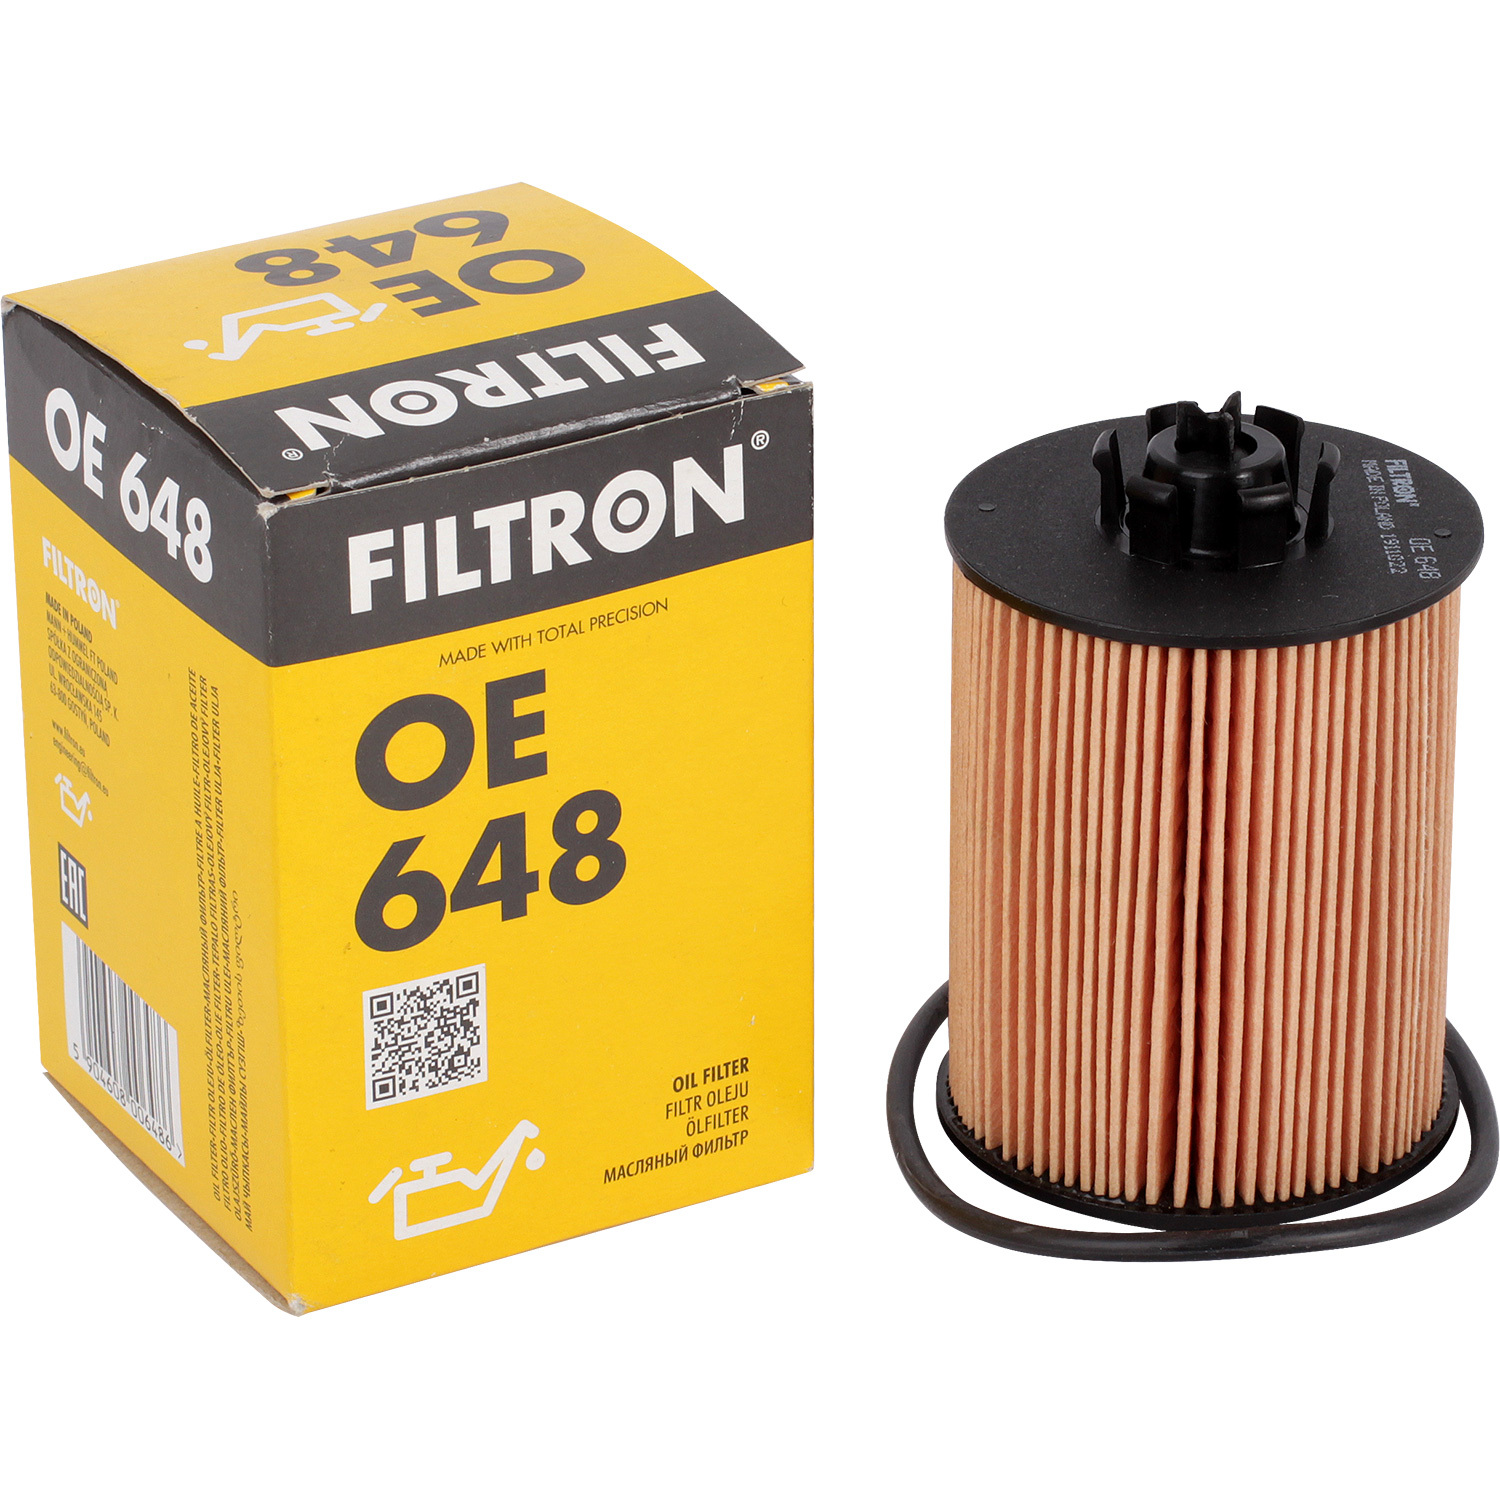 Фильтры Filtron Фильтр масляный Filtron OE648 фильтры filtron фильтр масляный filtron op5201